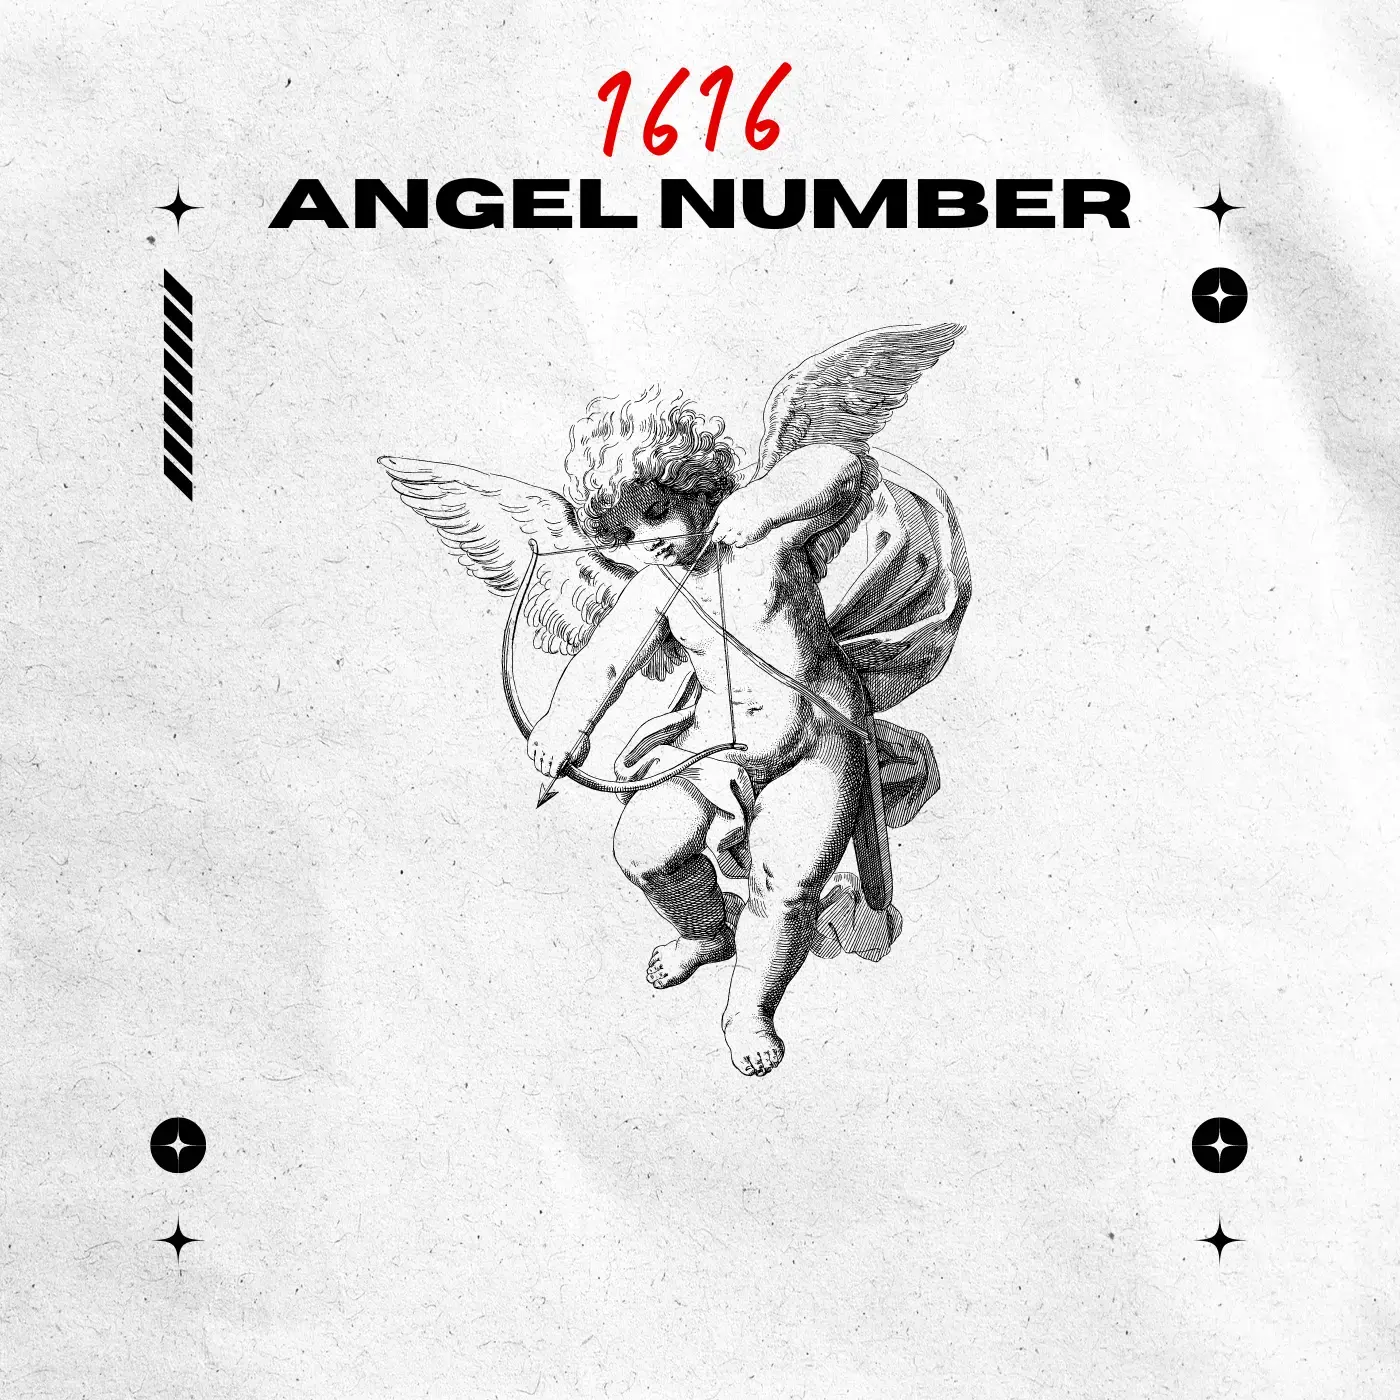 Angel Number 1616